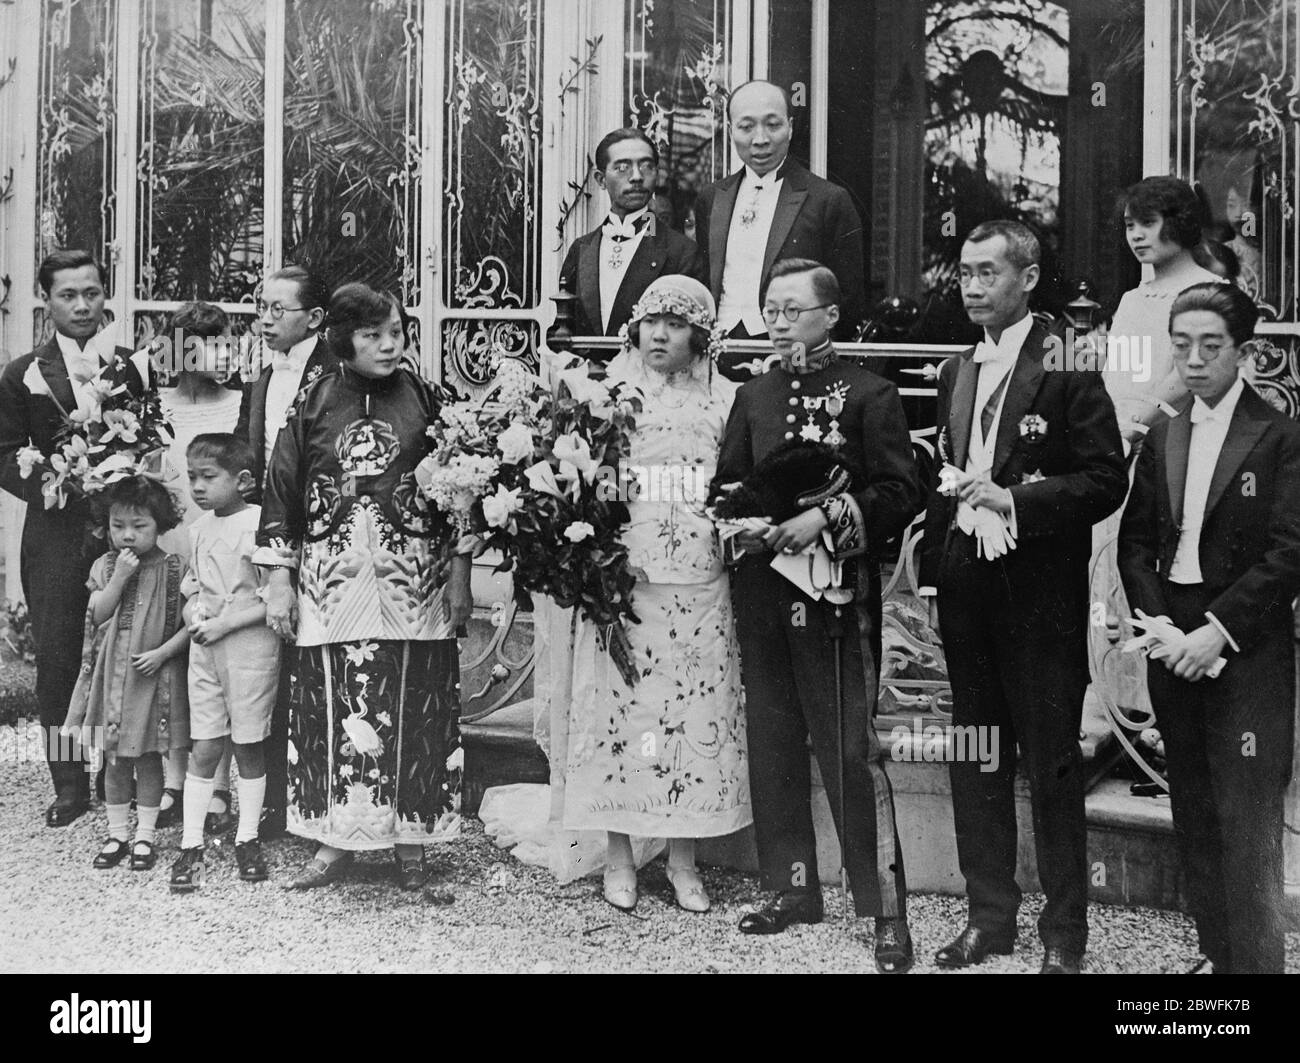 Chinesische diplomatische Hochzeit in Paris Frau Cheng Lo , Tochter des chinesischen Botschafters in Fance, und Herr R Y C Wang Sohn des chinesischen Ministers in der Schweiz , nach ihrer Hochzeit in Paris 16 Mai 1924 Stockfoto